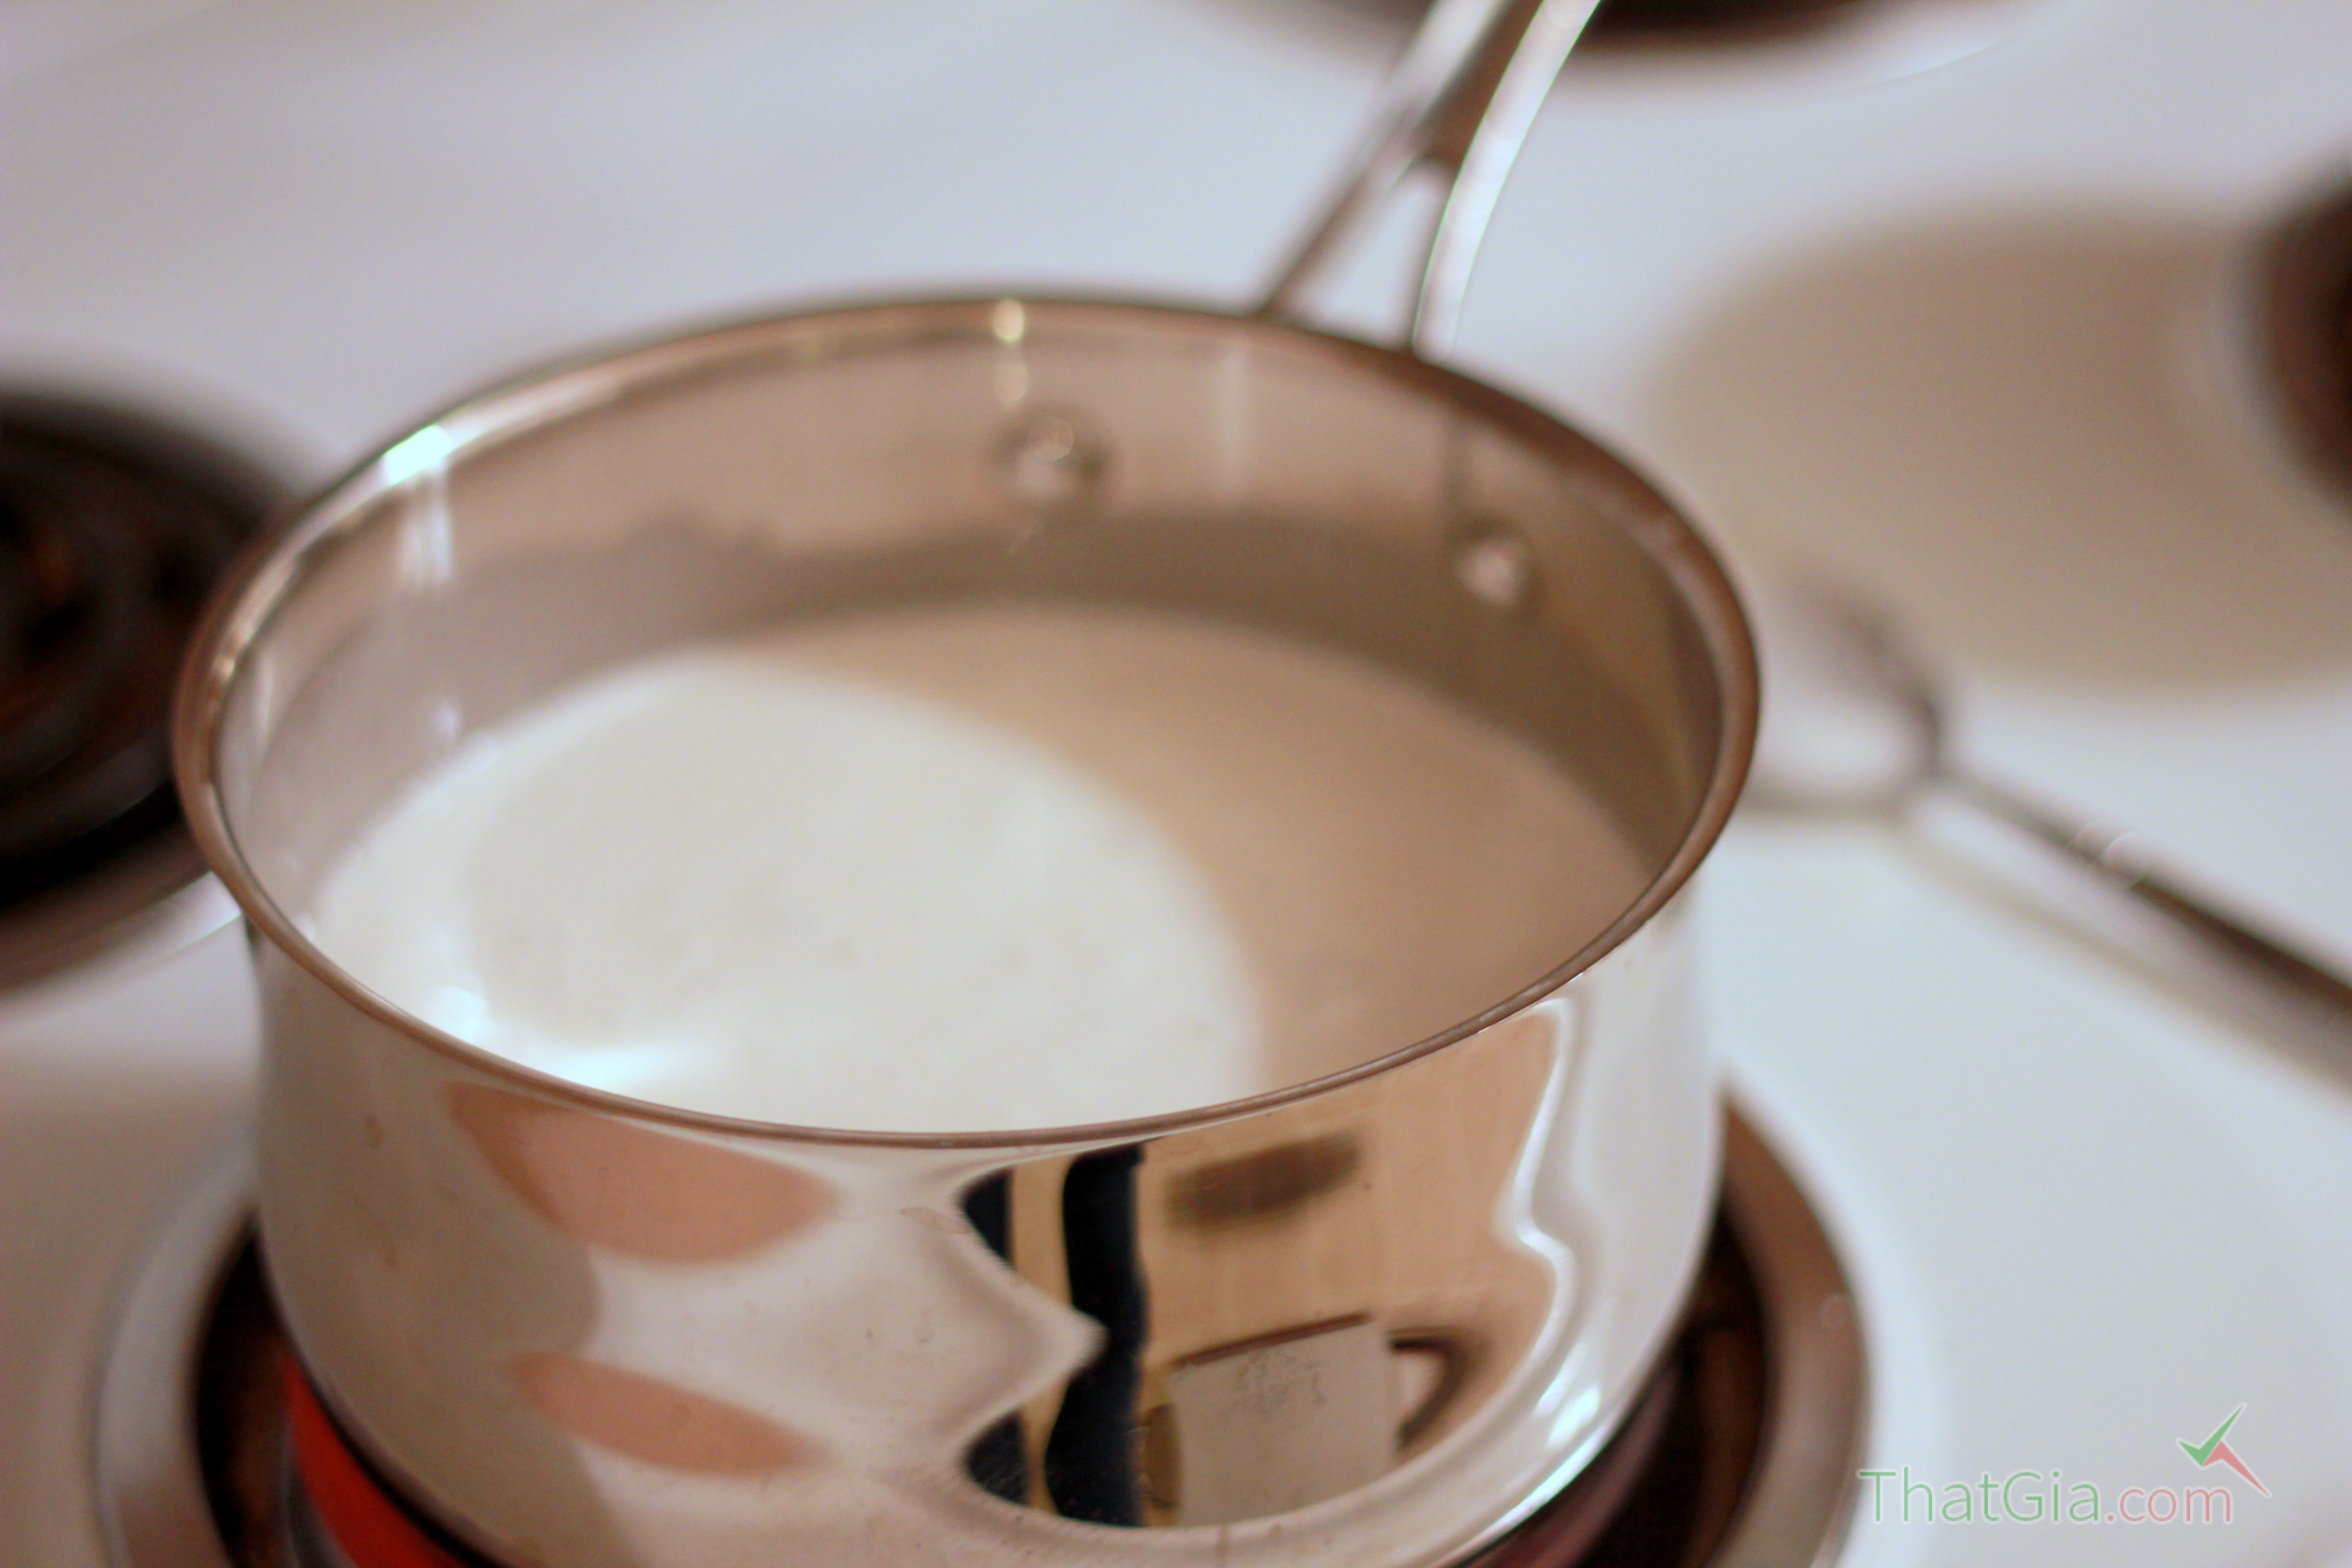 Không nên đun sữa tươi quá lâu trên bếp để bảo toàn dinh dưỡng quý giá có trong sữa